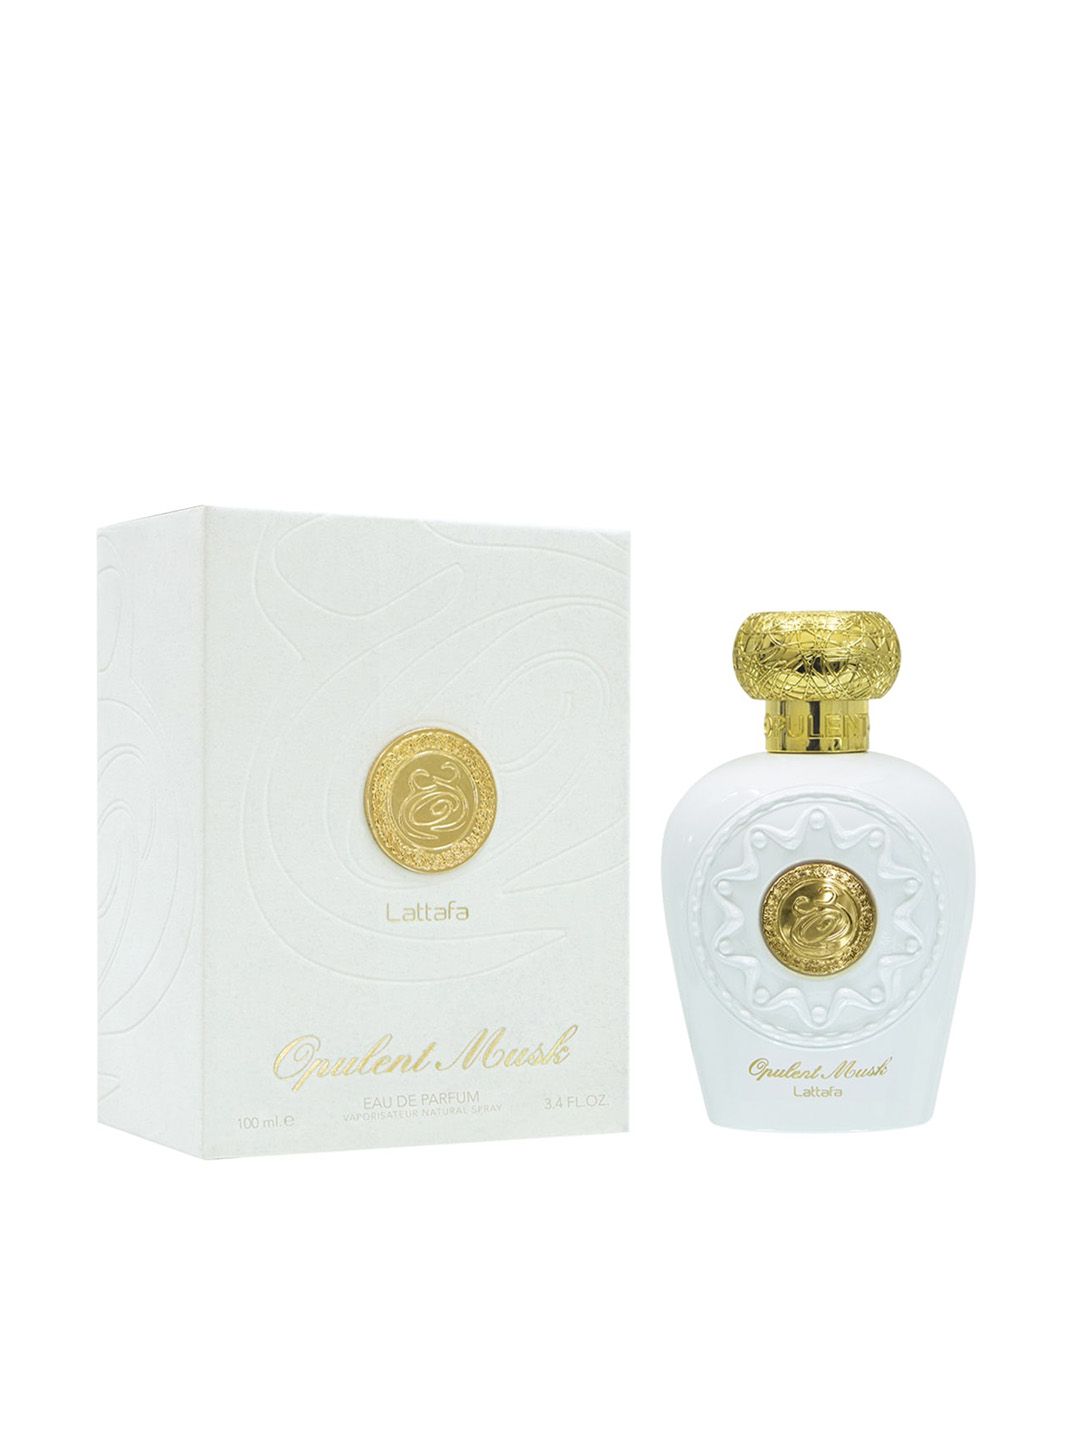 Lattafa Unisex Opulent Musk Eau De Parfum 100 ml Price in India